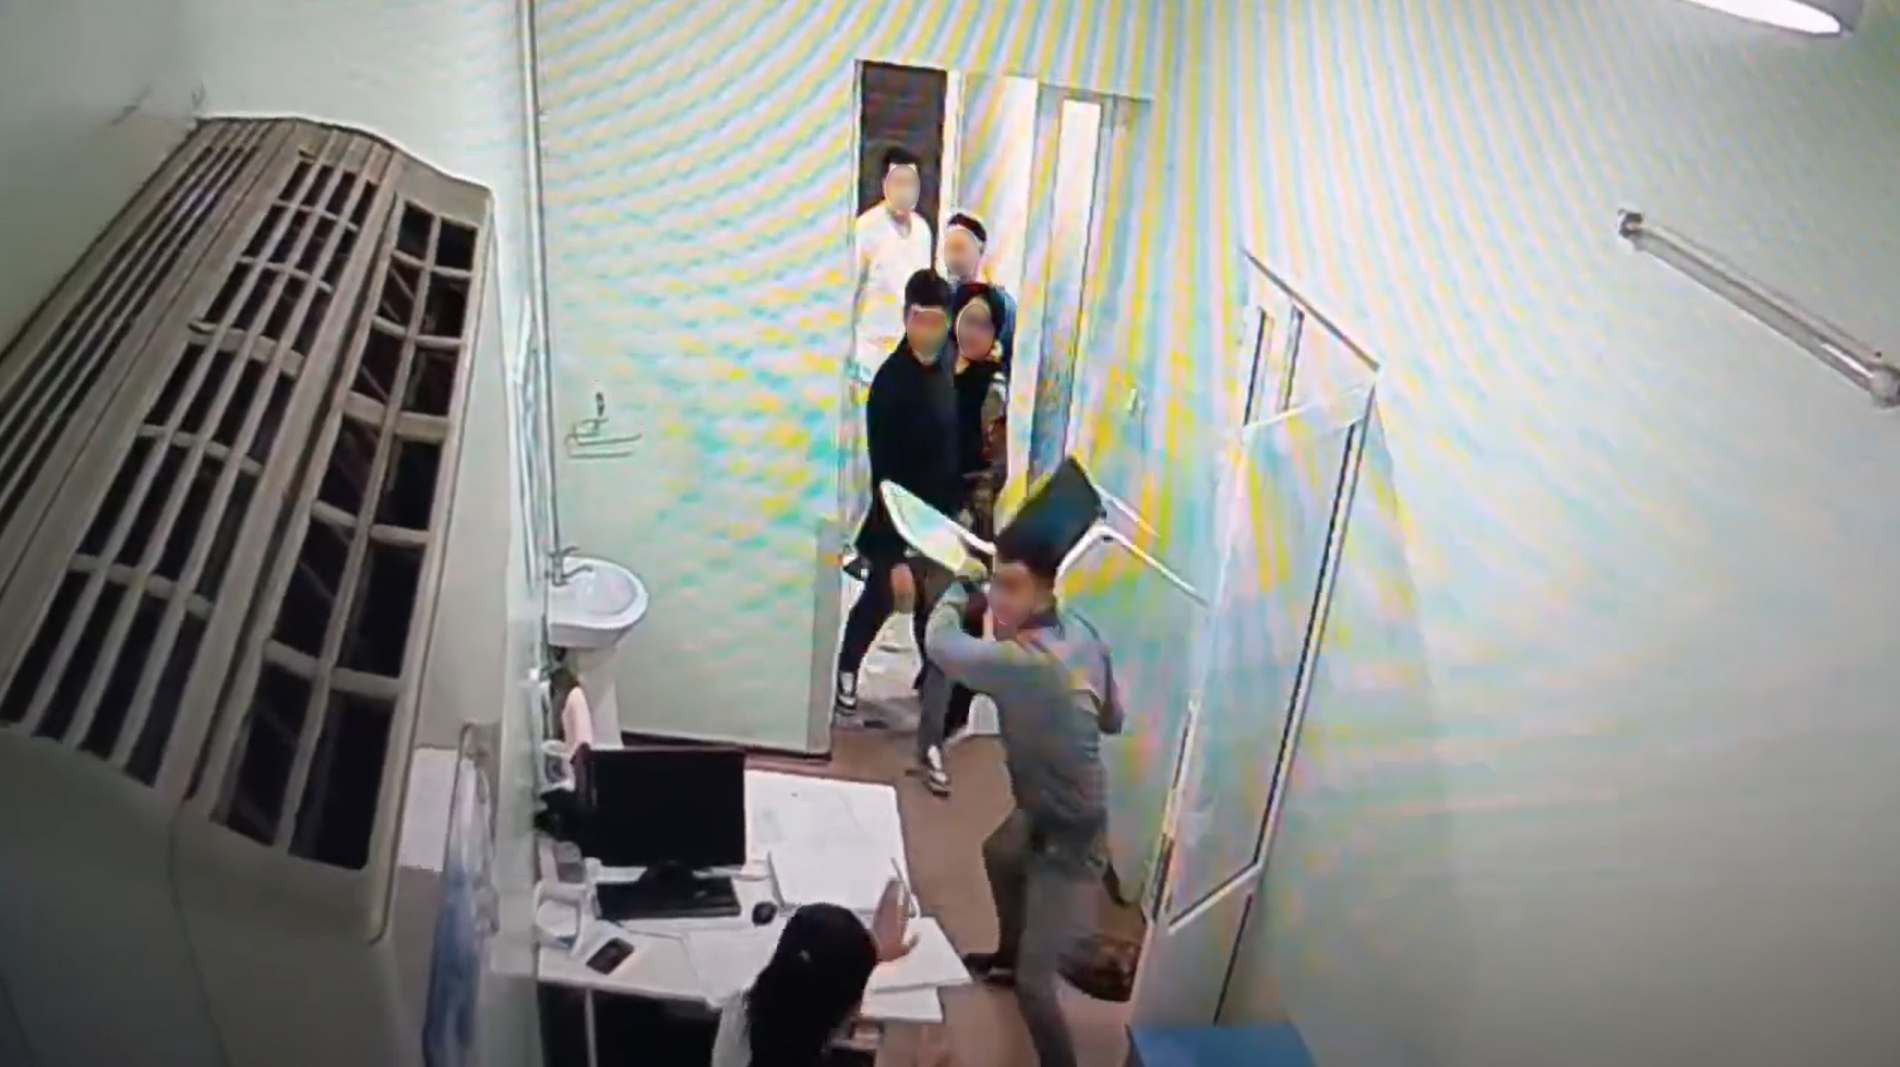 В одной из больниц Ташкента пациент бросил стул в женщину-врача — видео